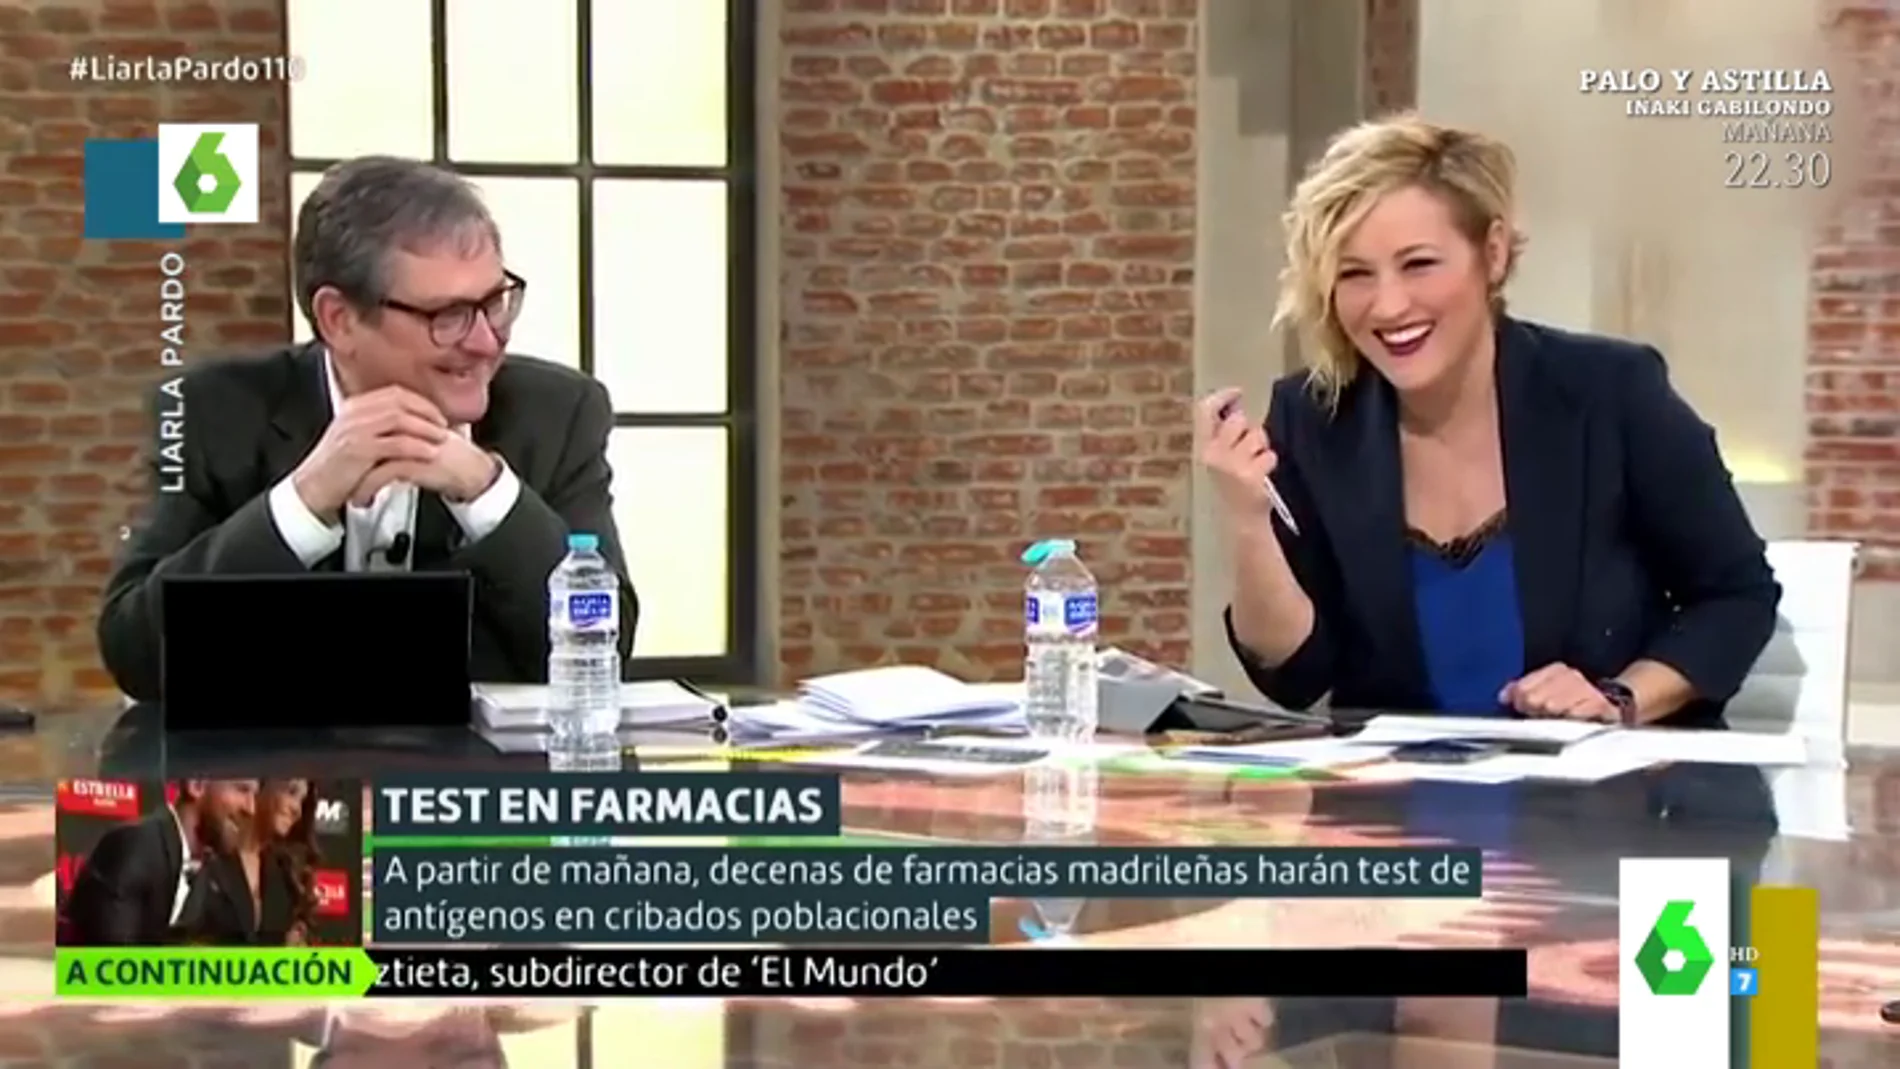 La incómoda pregunta de Cristina Pardo a Marhuenda: "Paco, ¿tú que eres más, de antígenos o de test anal?"